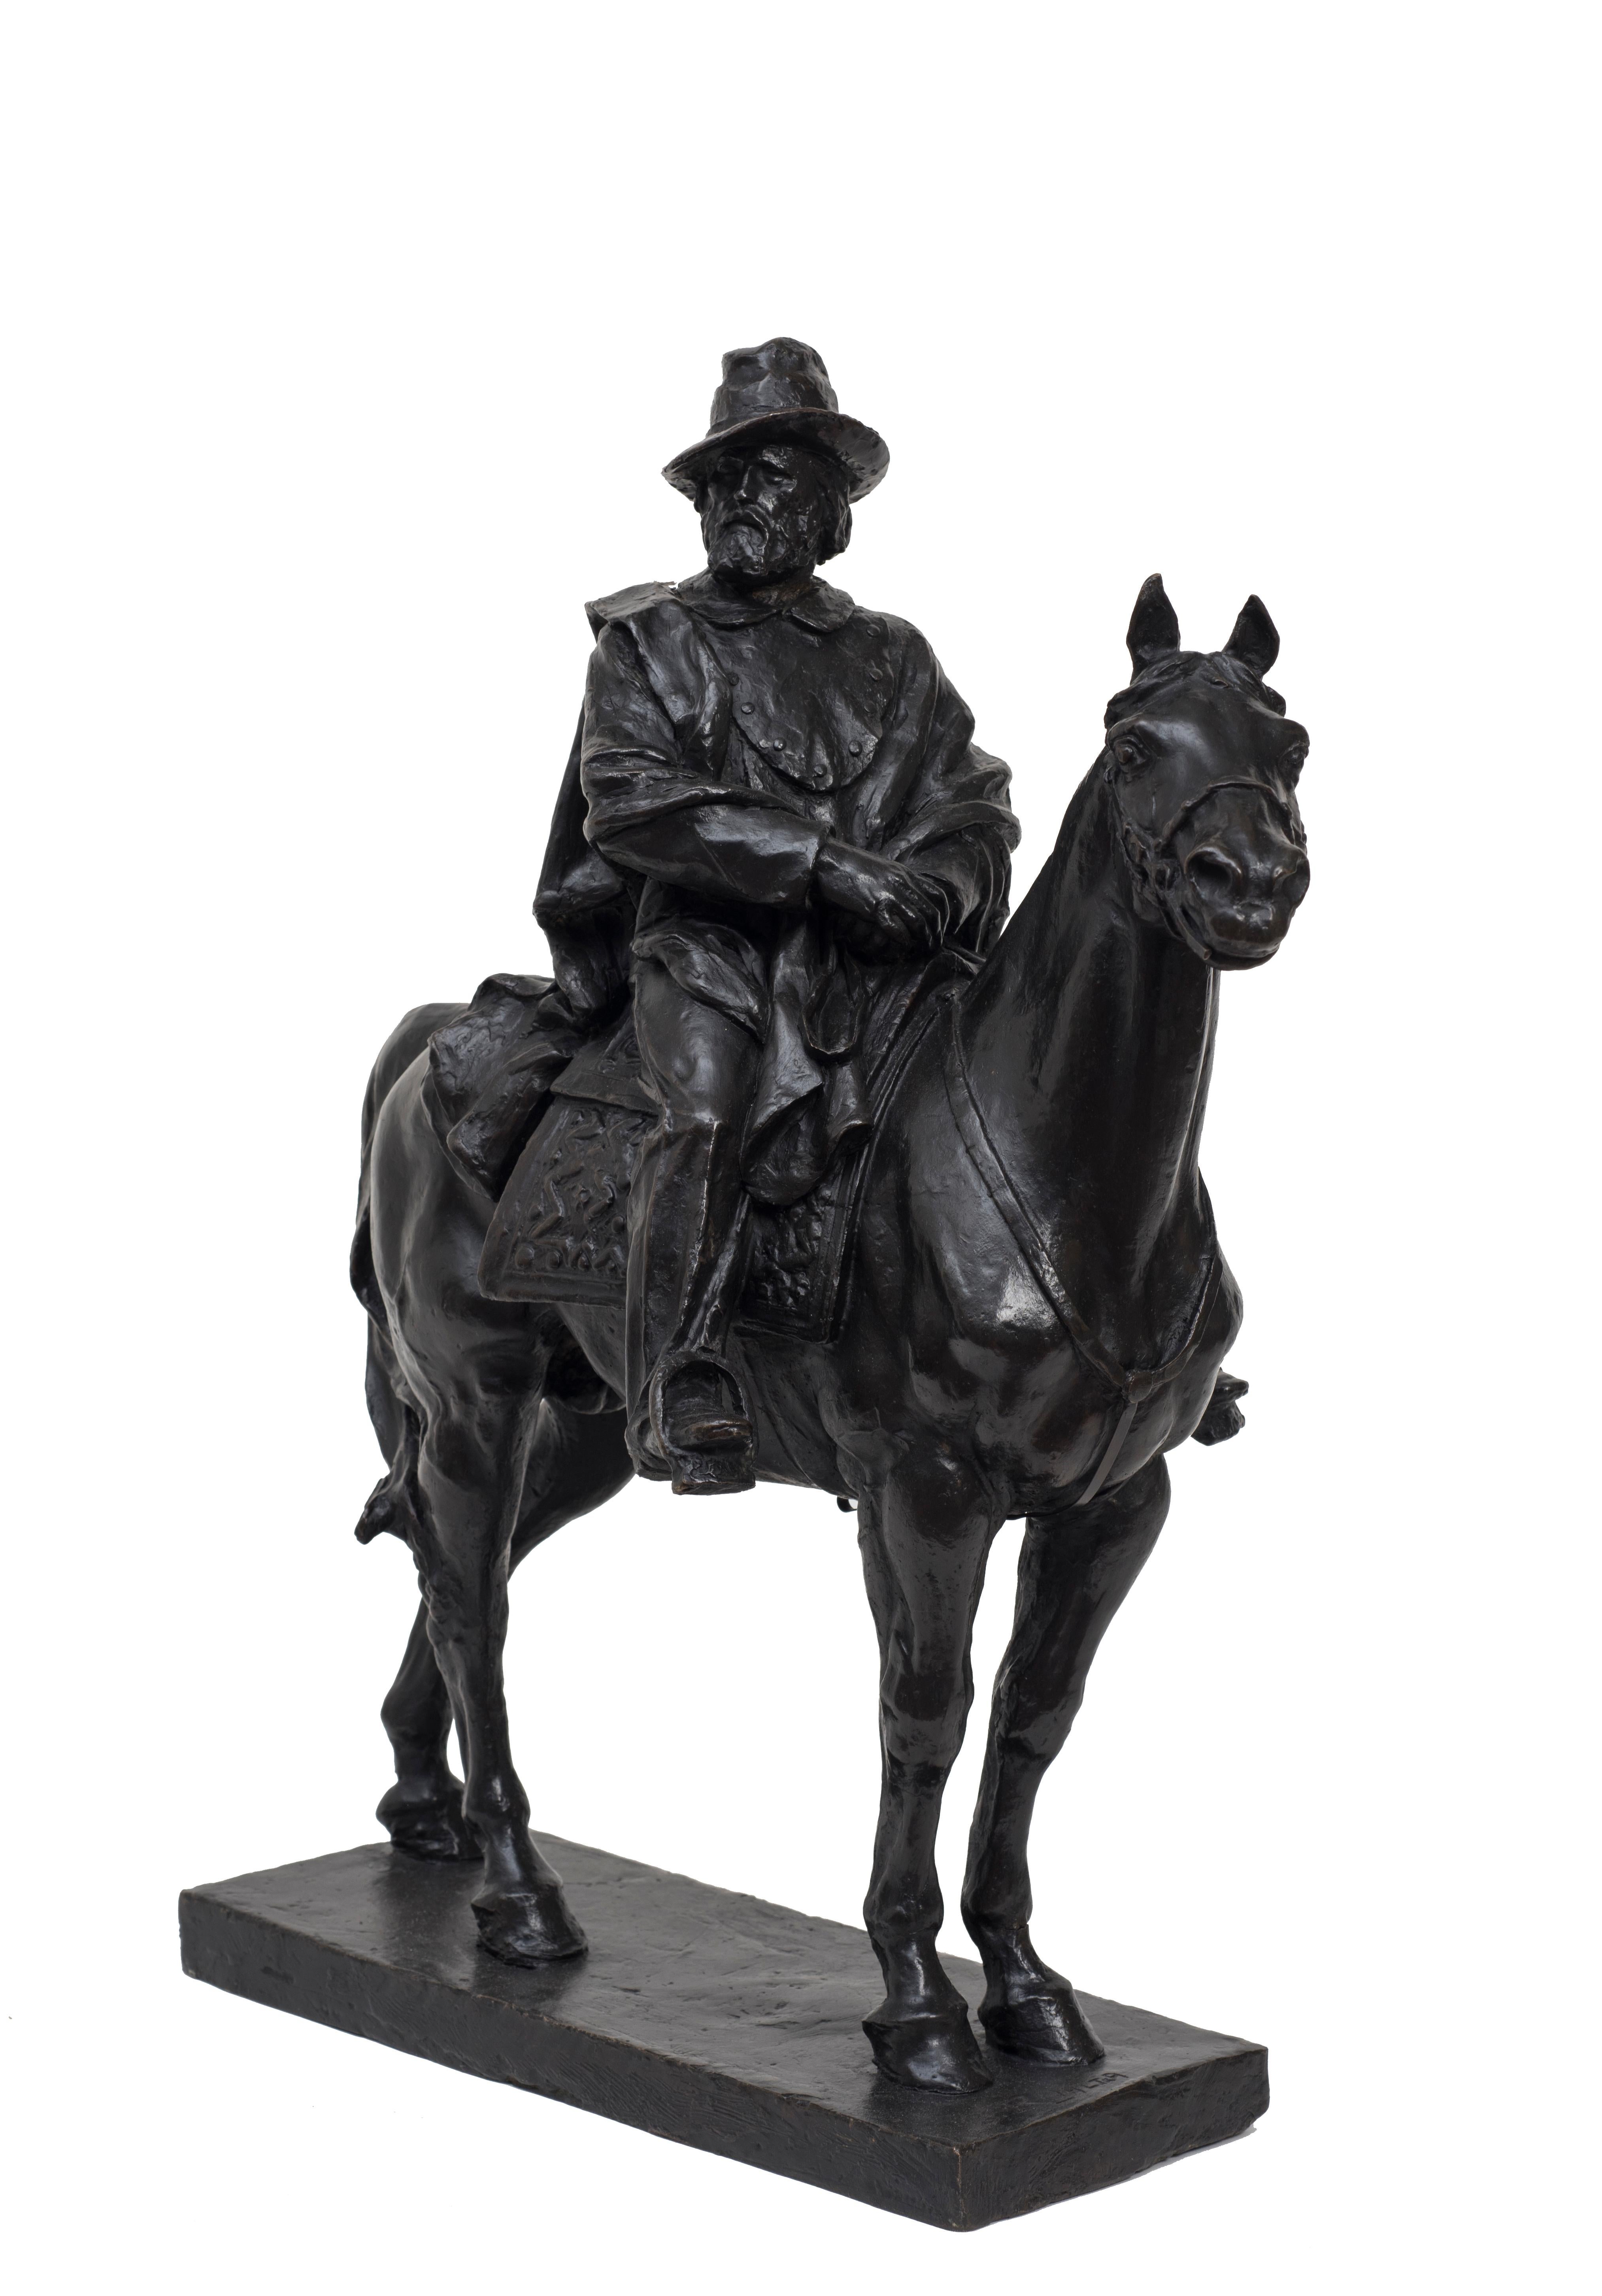 Garibaldi à cheval est une sculpture originale en bronze réalisée par Carlo Rivalta. Signé par l'artiste.

Belle et importante sculpture représentant le plus célèbre héros italien du Risorgimento.

Excellentes conditions.

Carlo Rivalta (1887 -